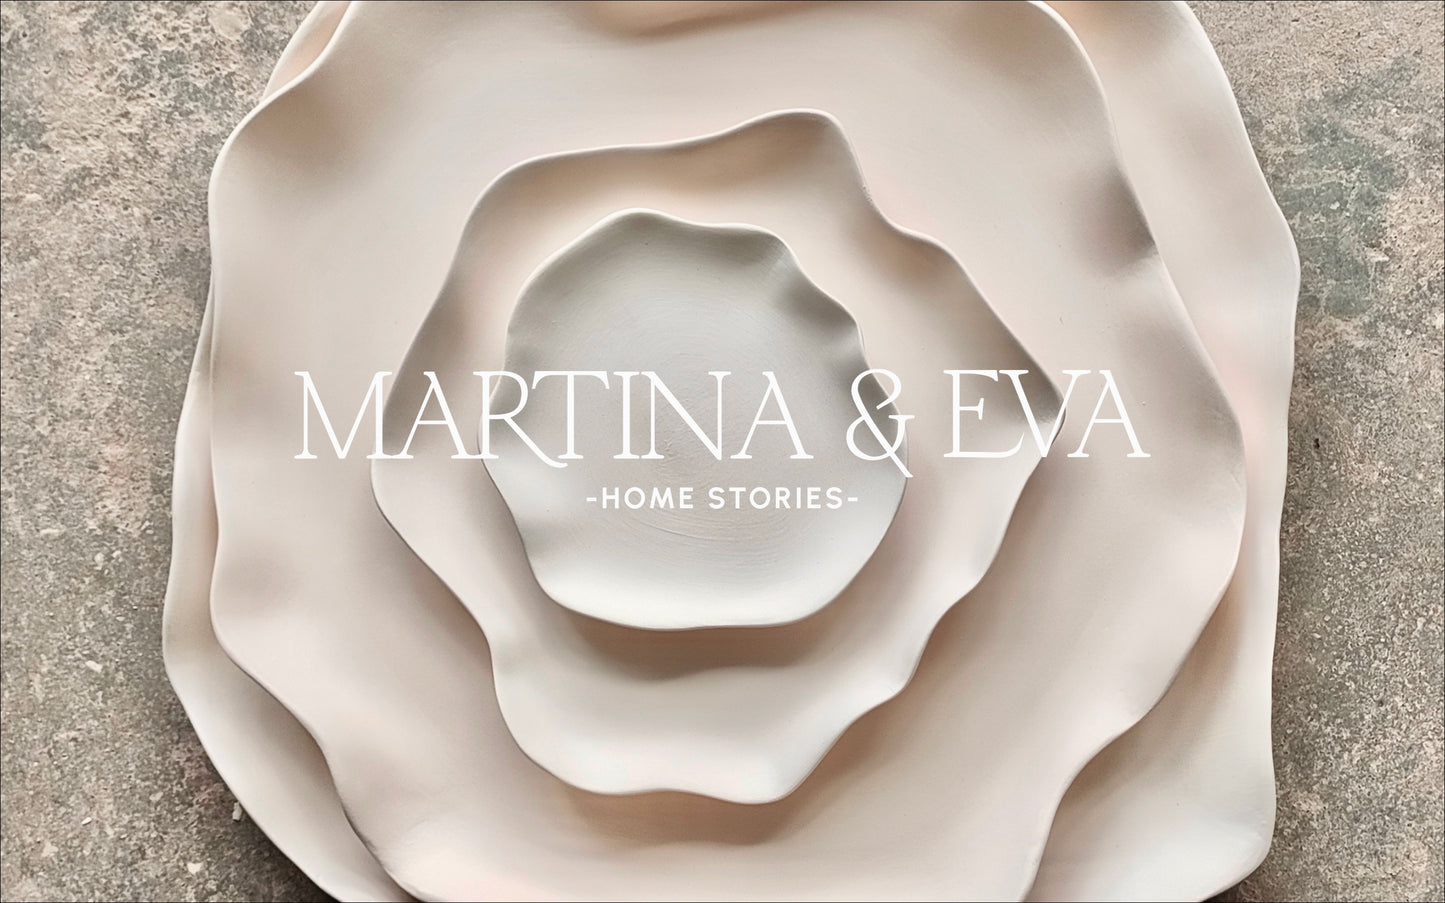 Tarjeta regalo MARTINA & EVA